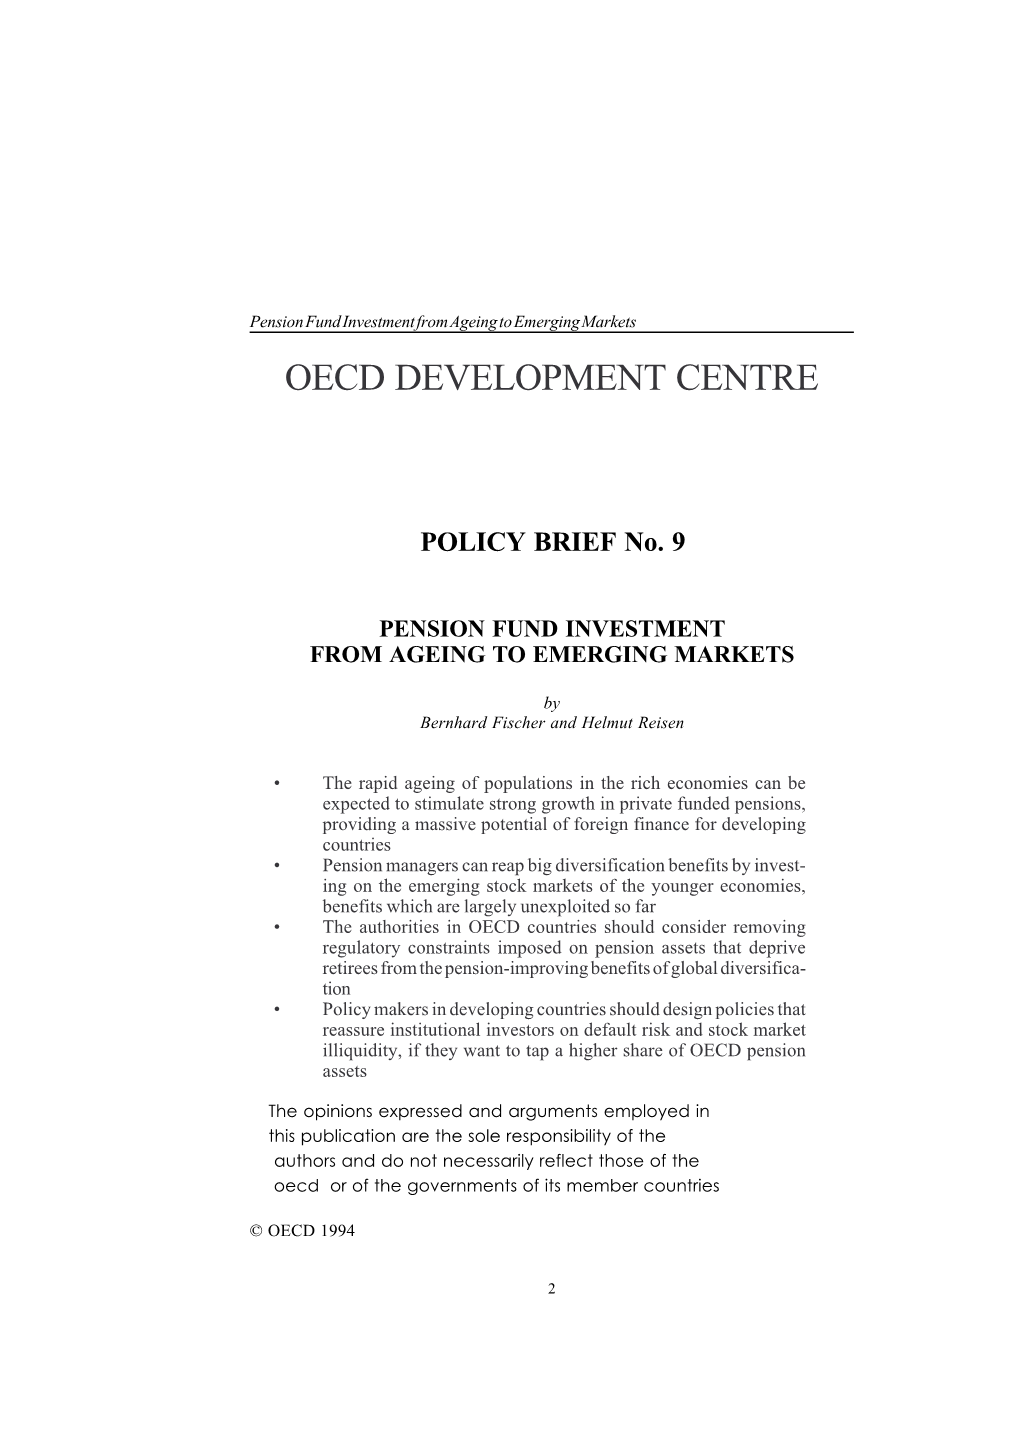 OECD Development Centre. Policy Brief, No. 9